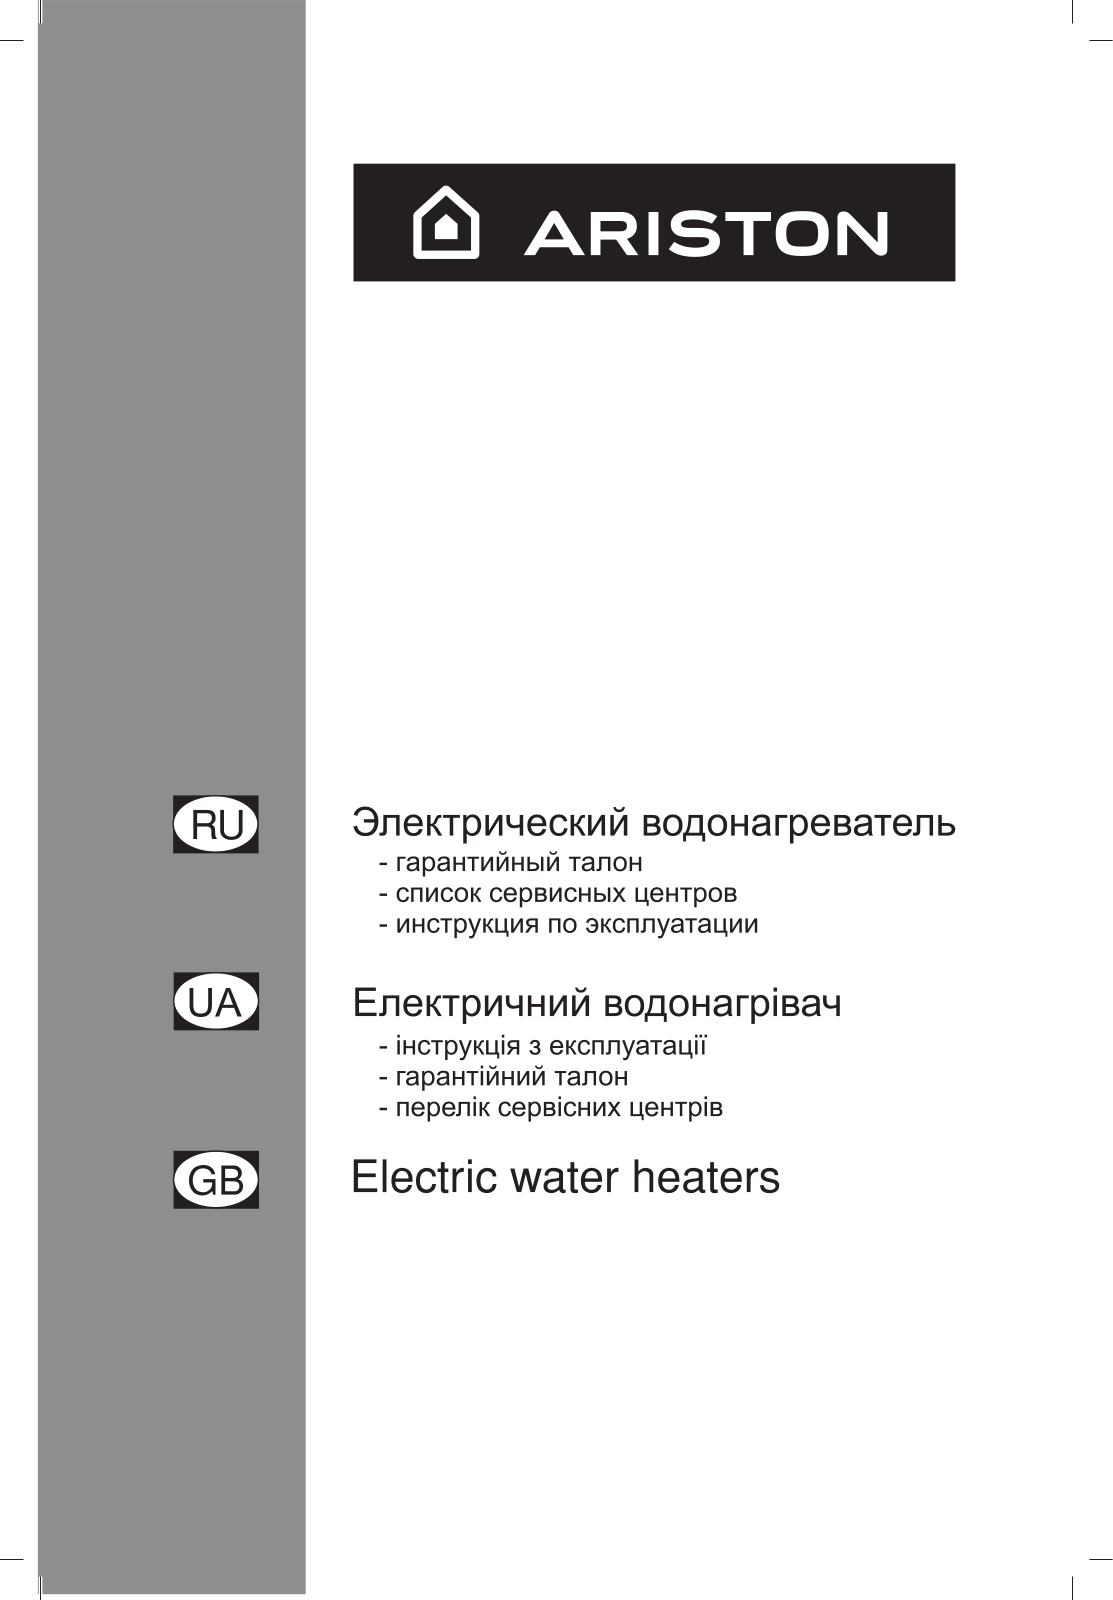 Ariston ABS PLATINUM ECO SLIM User Manual